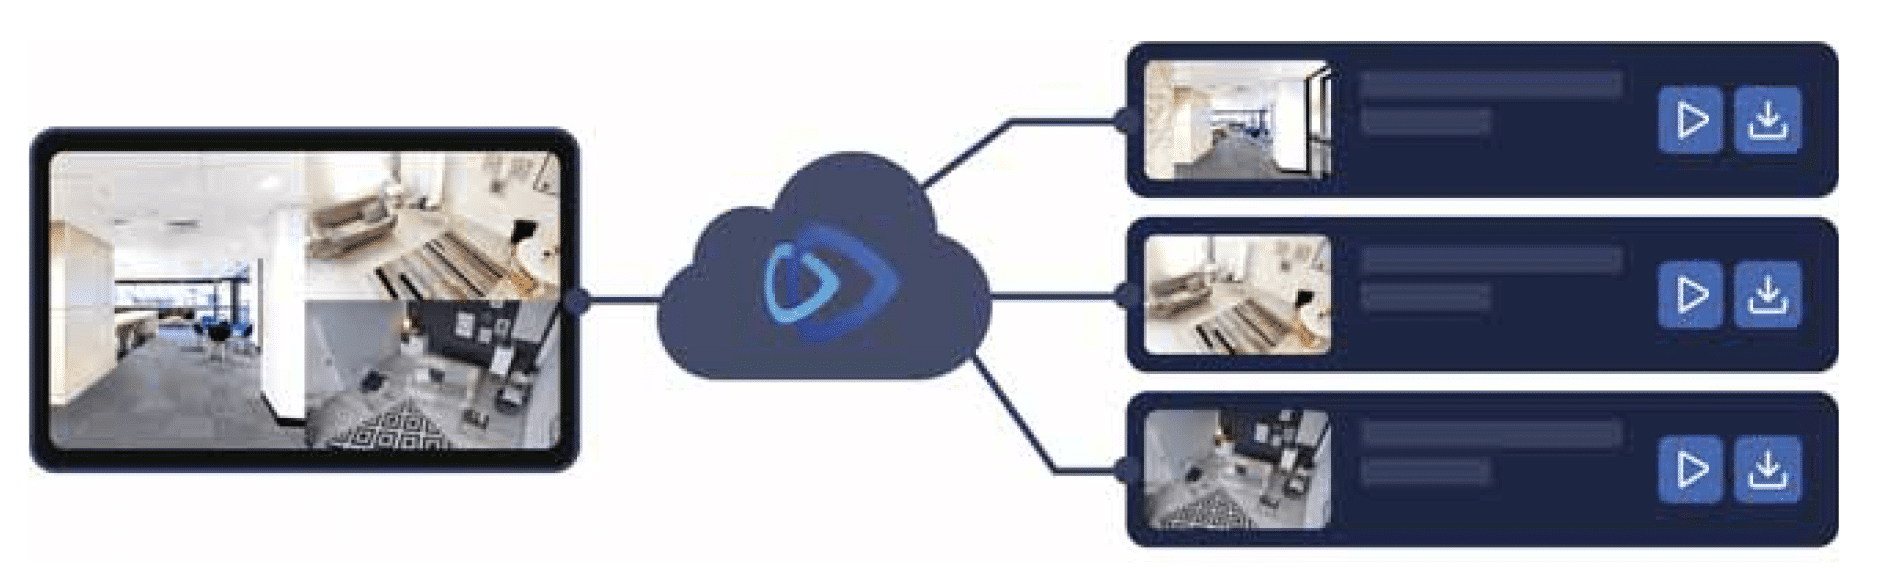   cloud backup caméra de sécurité système de surveillance